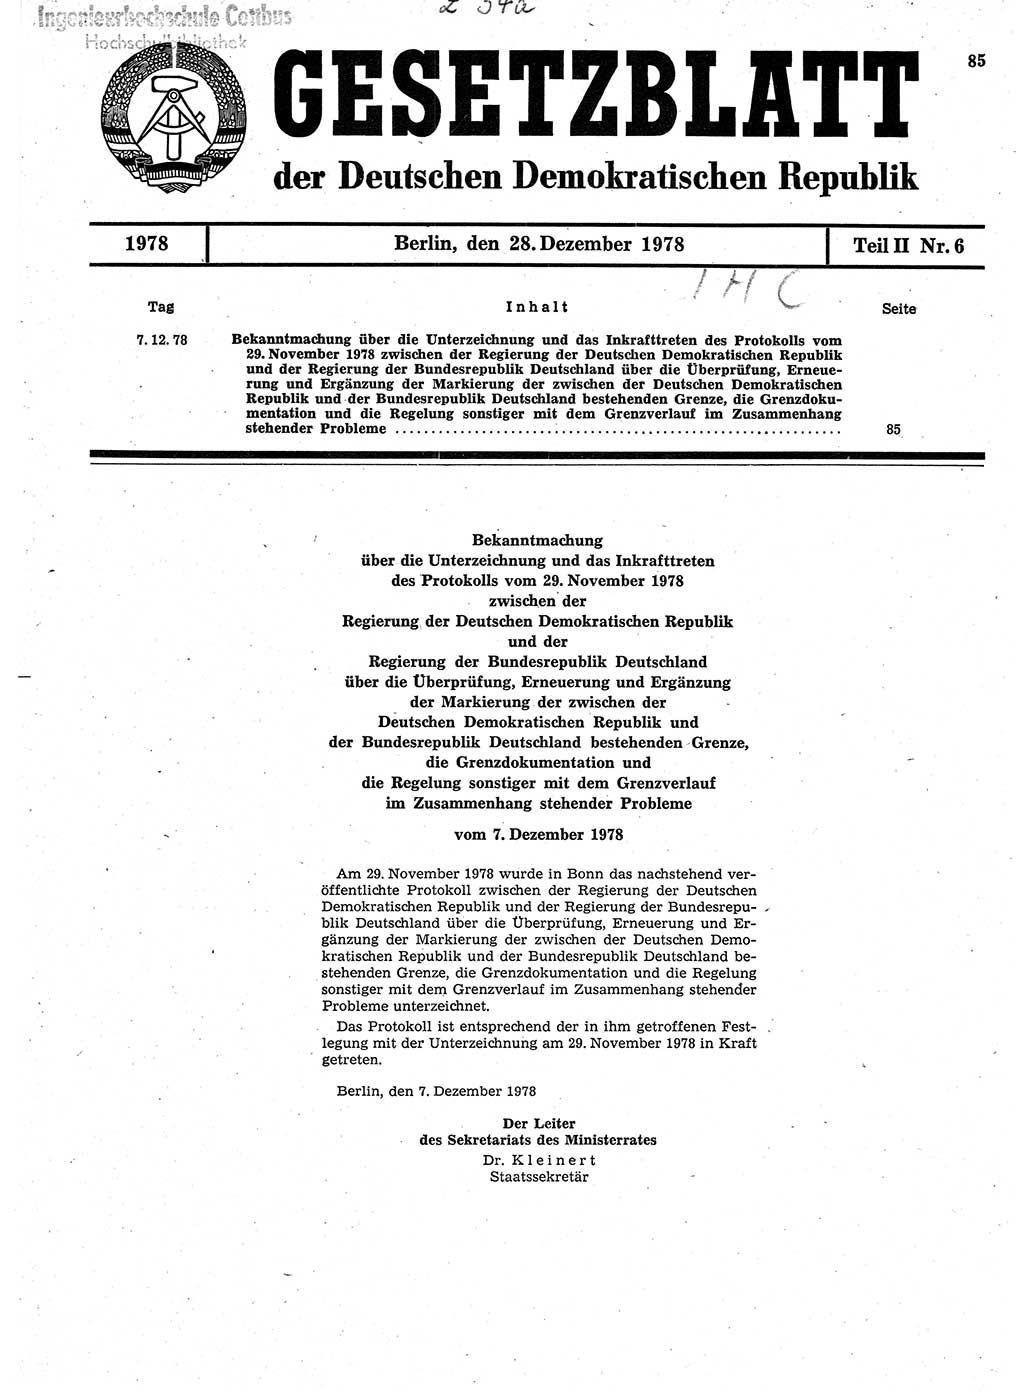 Gesetzblatt (GBl.) der Deutschen Demokratischen Republik (DDR) Teil ⅠⅠ 1978, Seite 85 (GBl. DDR ⅠⅠ 1978, S. 85)